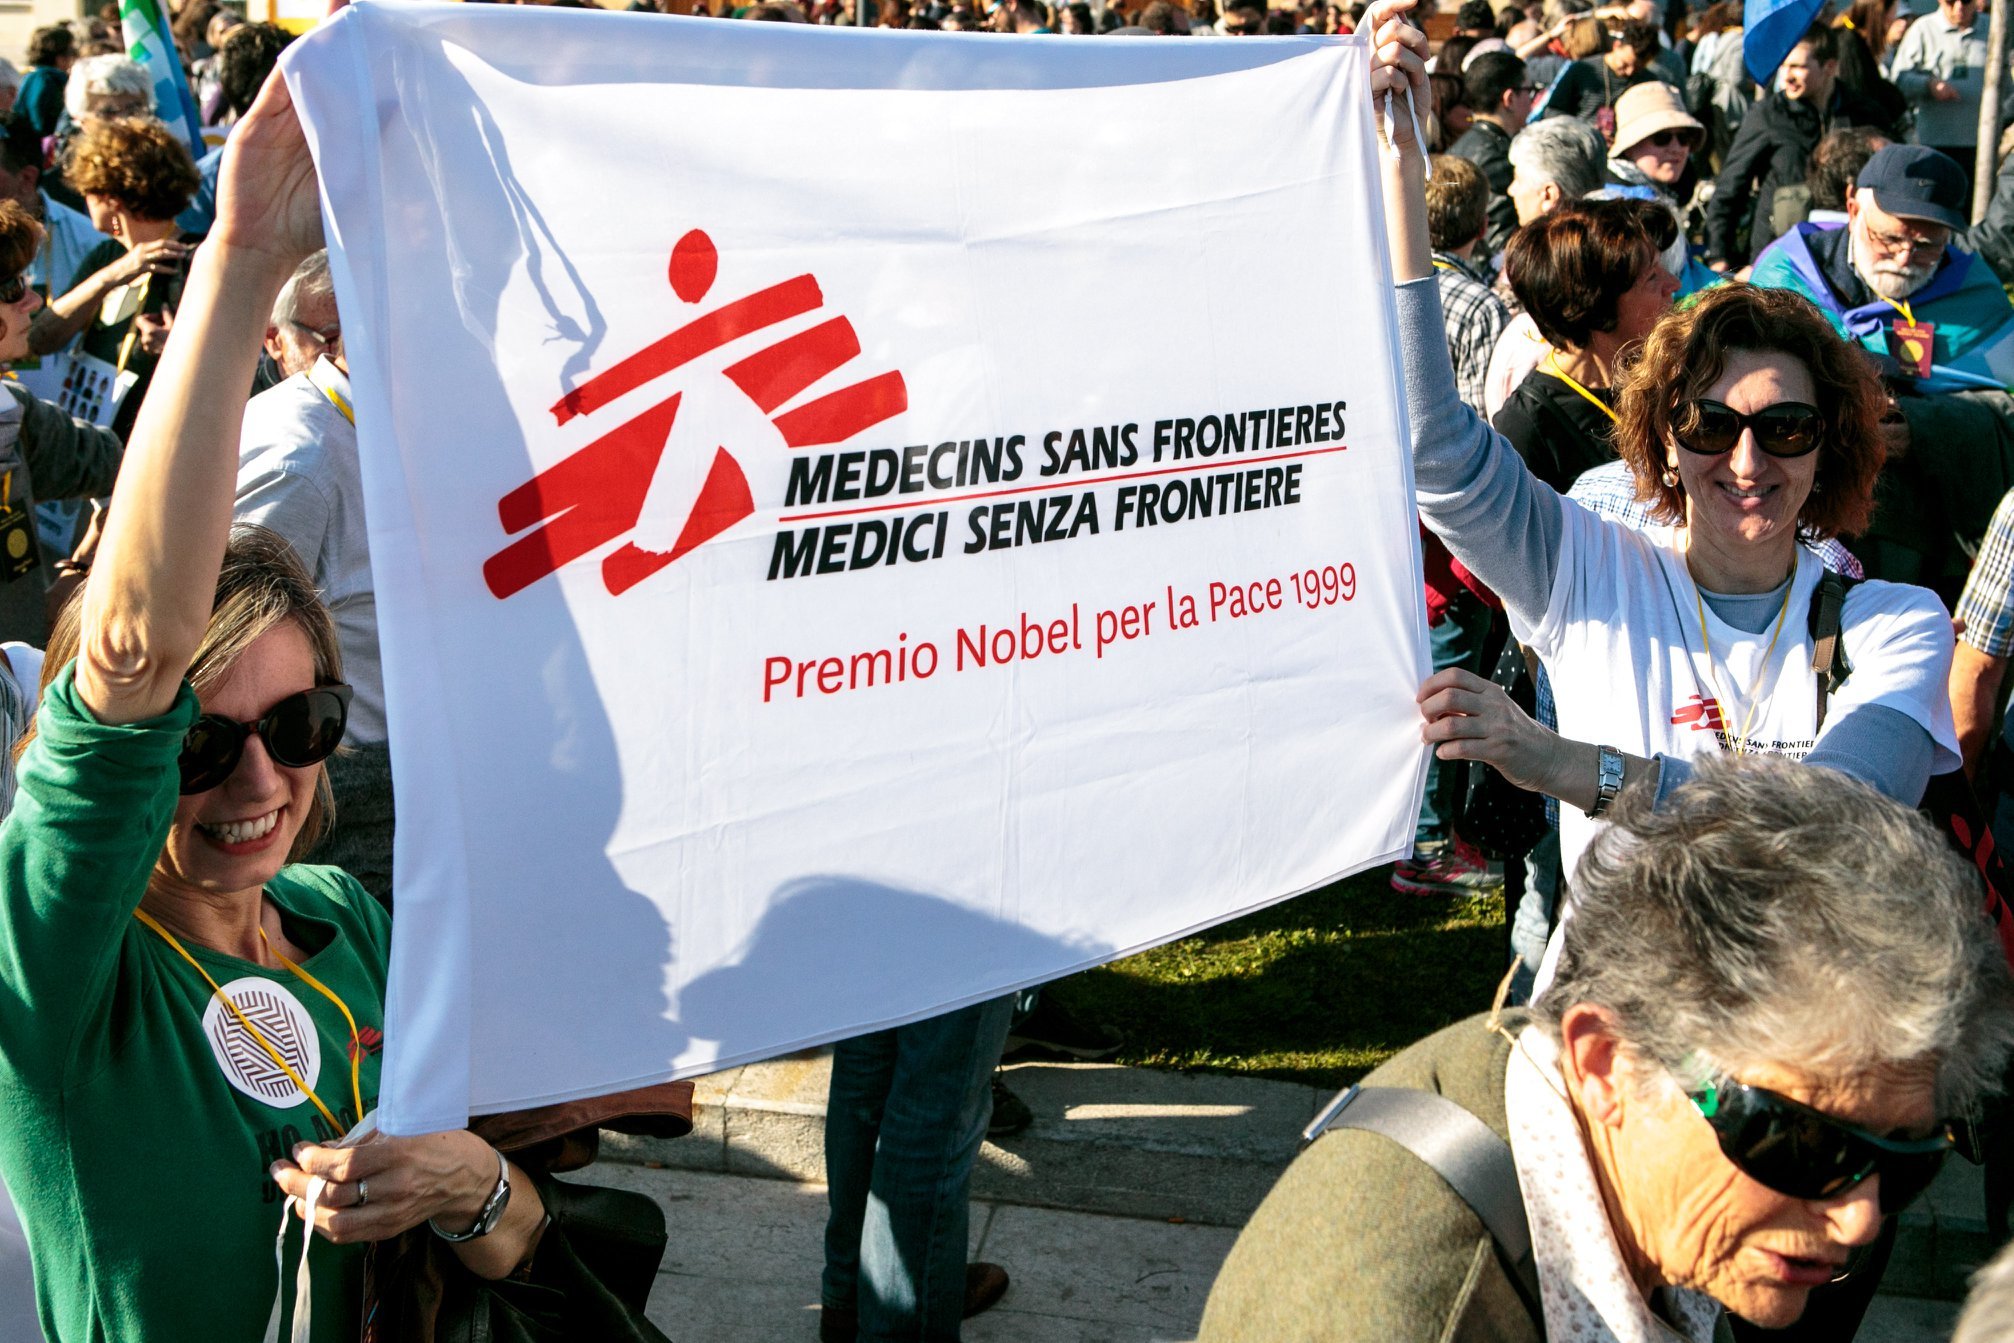 Migranti, Medici Senza Frontiere fa ricorso contro il governo: "No al silenzio contro gli abusi"